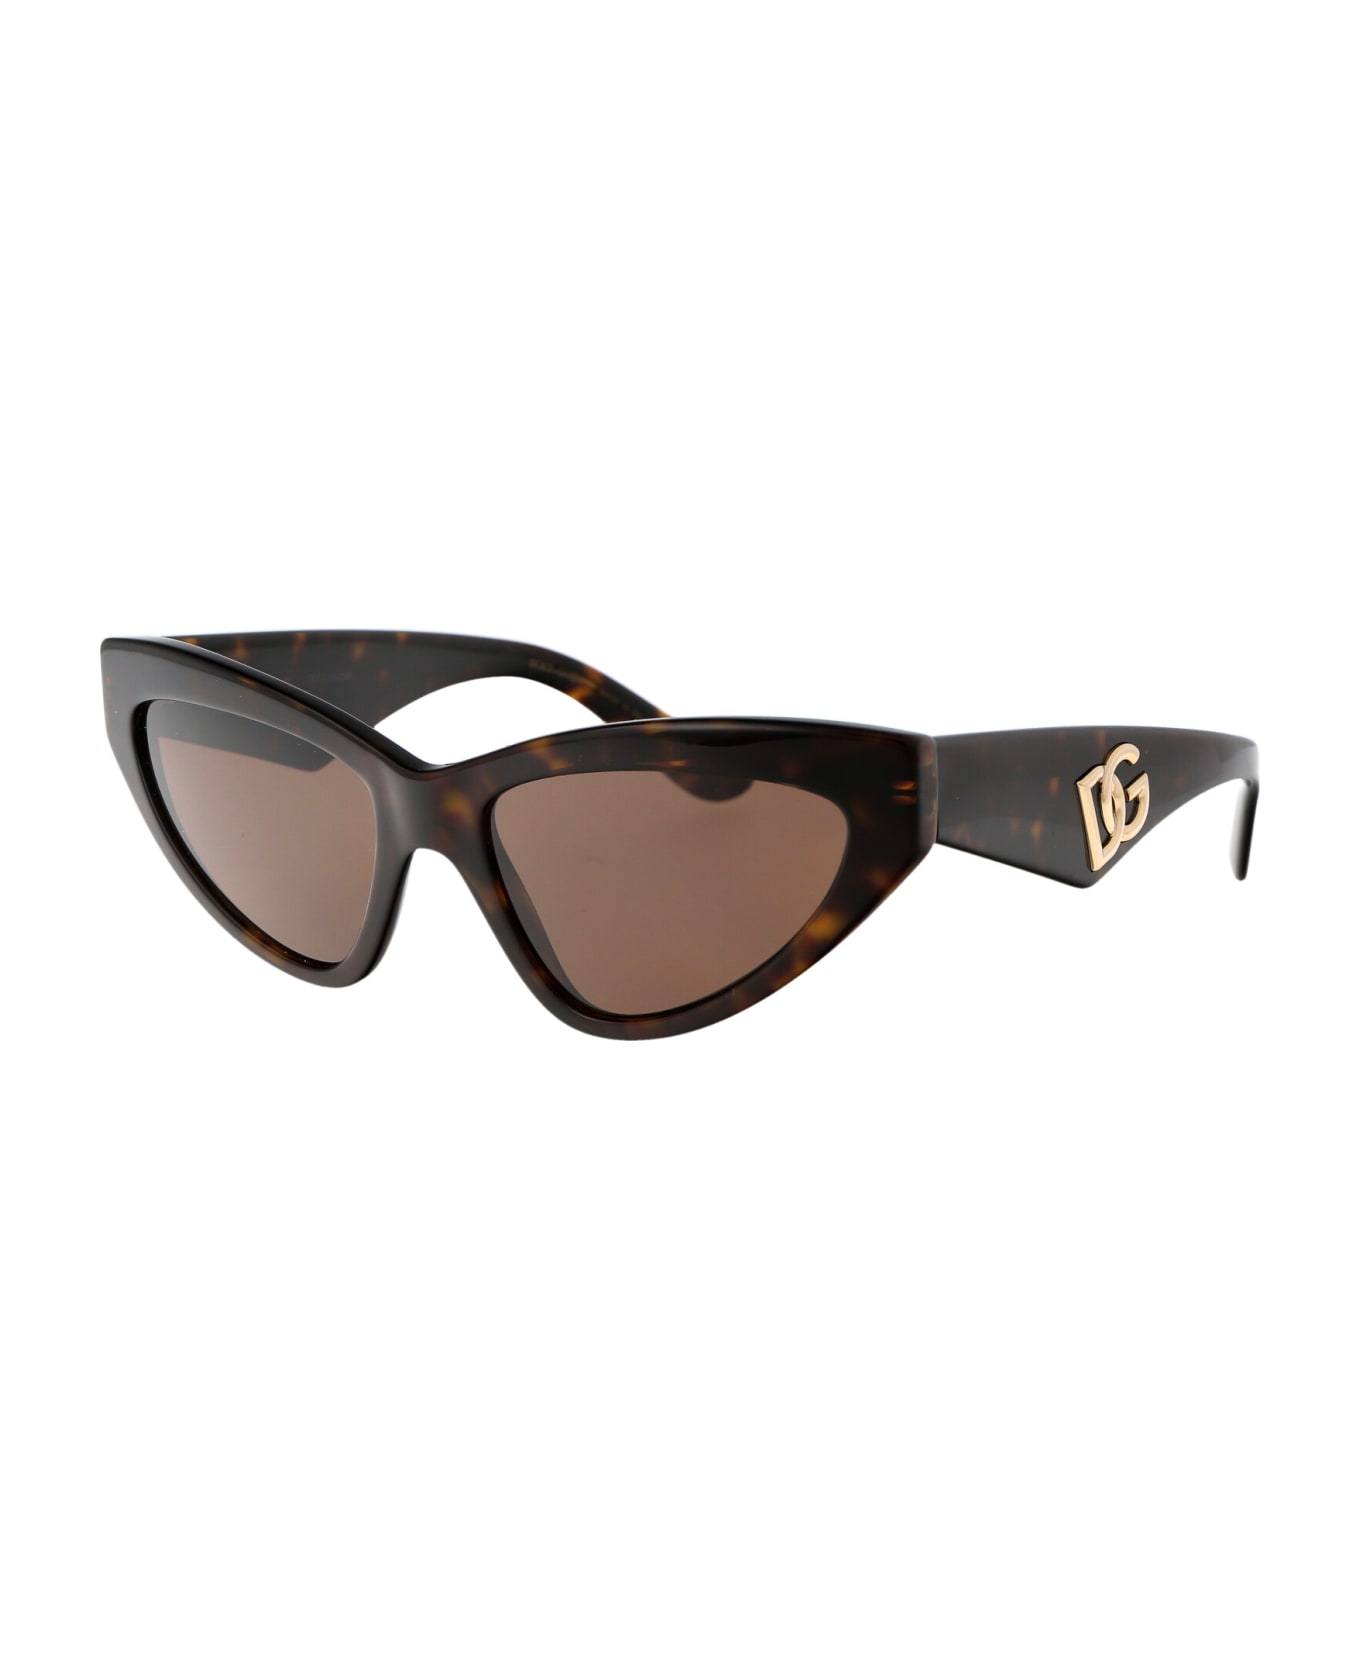 Dolce & Gabbana Eyewear 0dg4439 Sunglasses - 502/73 HAVANA